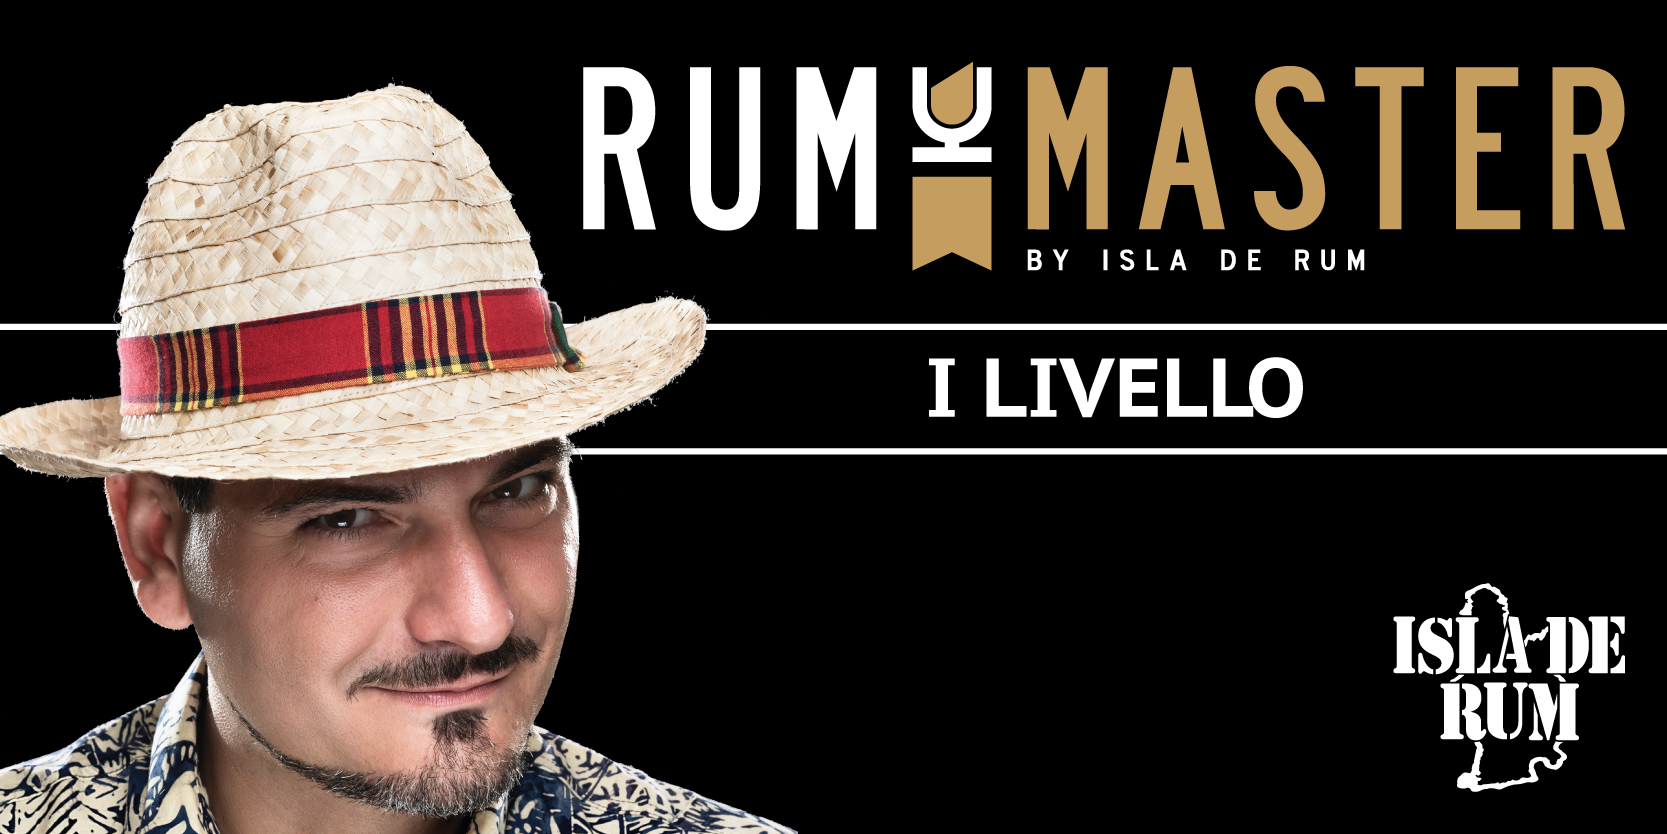 Rum Master I livello Isla de Rum